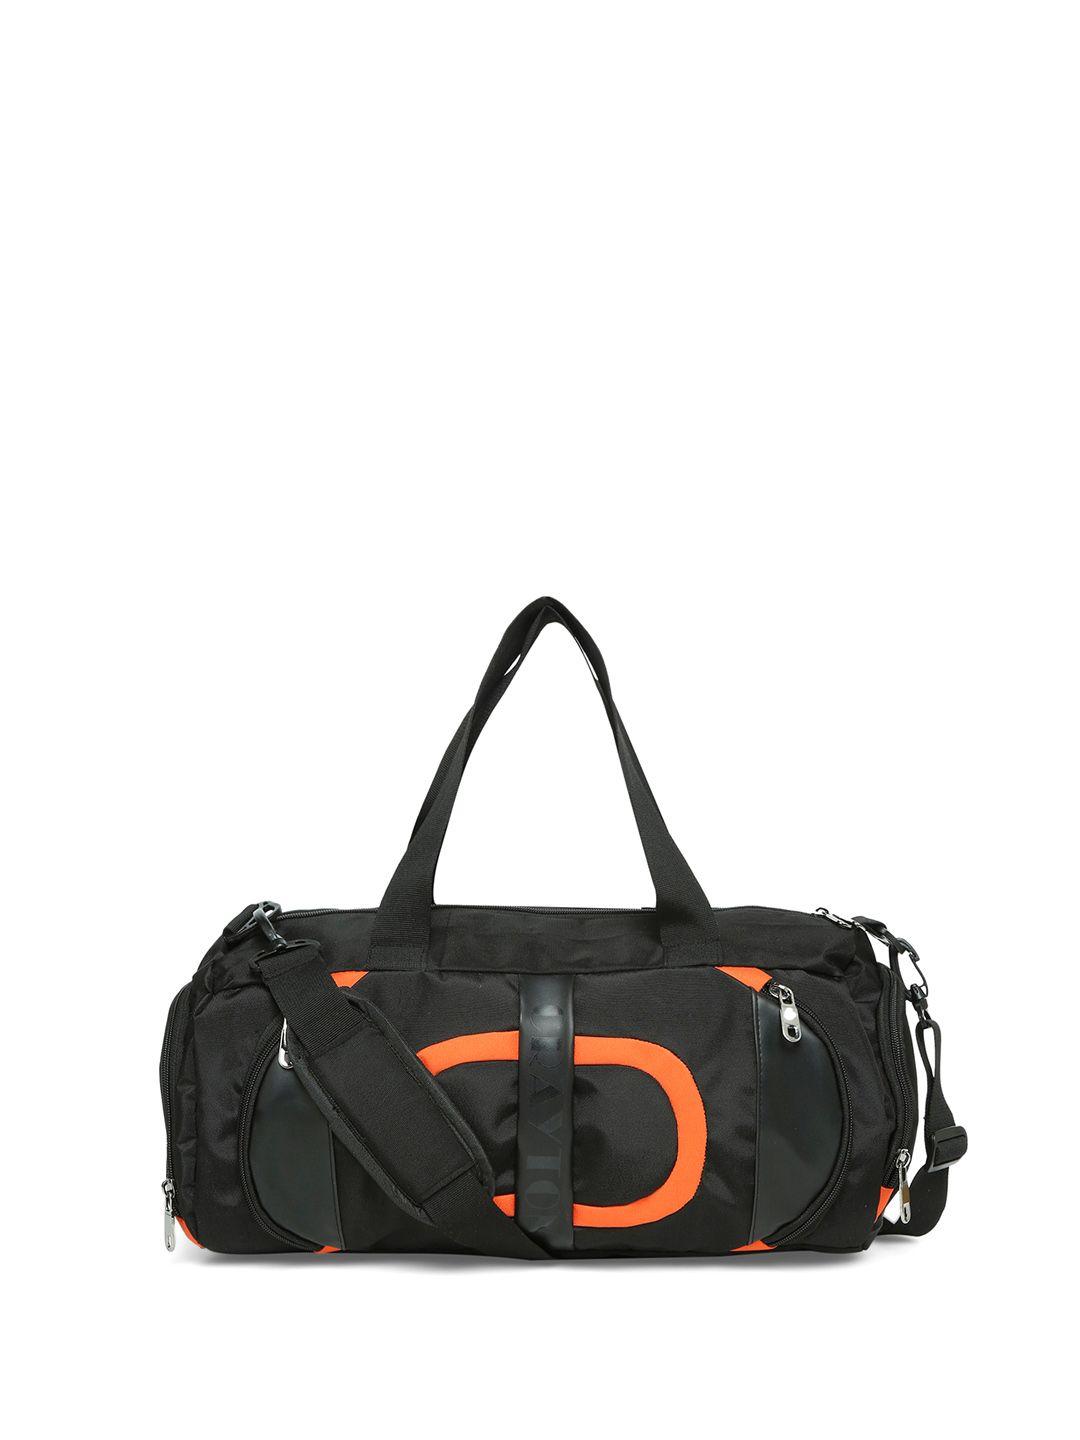 crayton medium sports or gym duffel bag